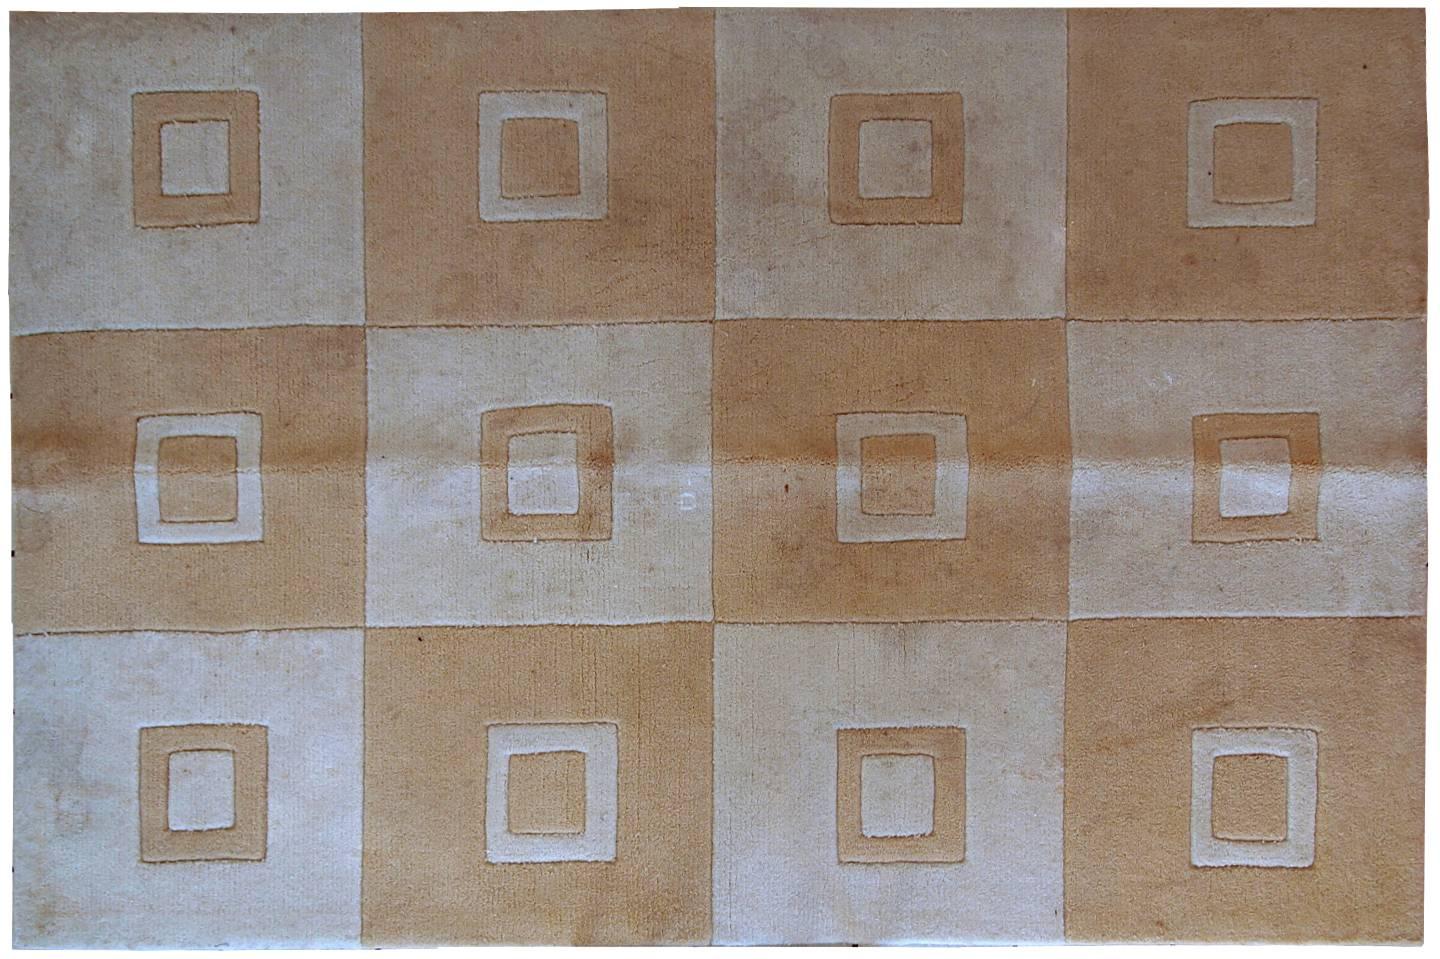 Alfombra china hecha a mano en tonos claros de blanco y marrón. Tiene un diseño geométrico moderno que contiene cuadrados. La alfombra se fabricó con acrílico en China. Está en estado original, tiene algunas decoloraciones propias de la edad.
 